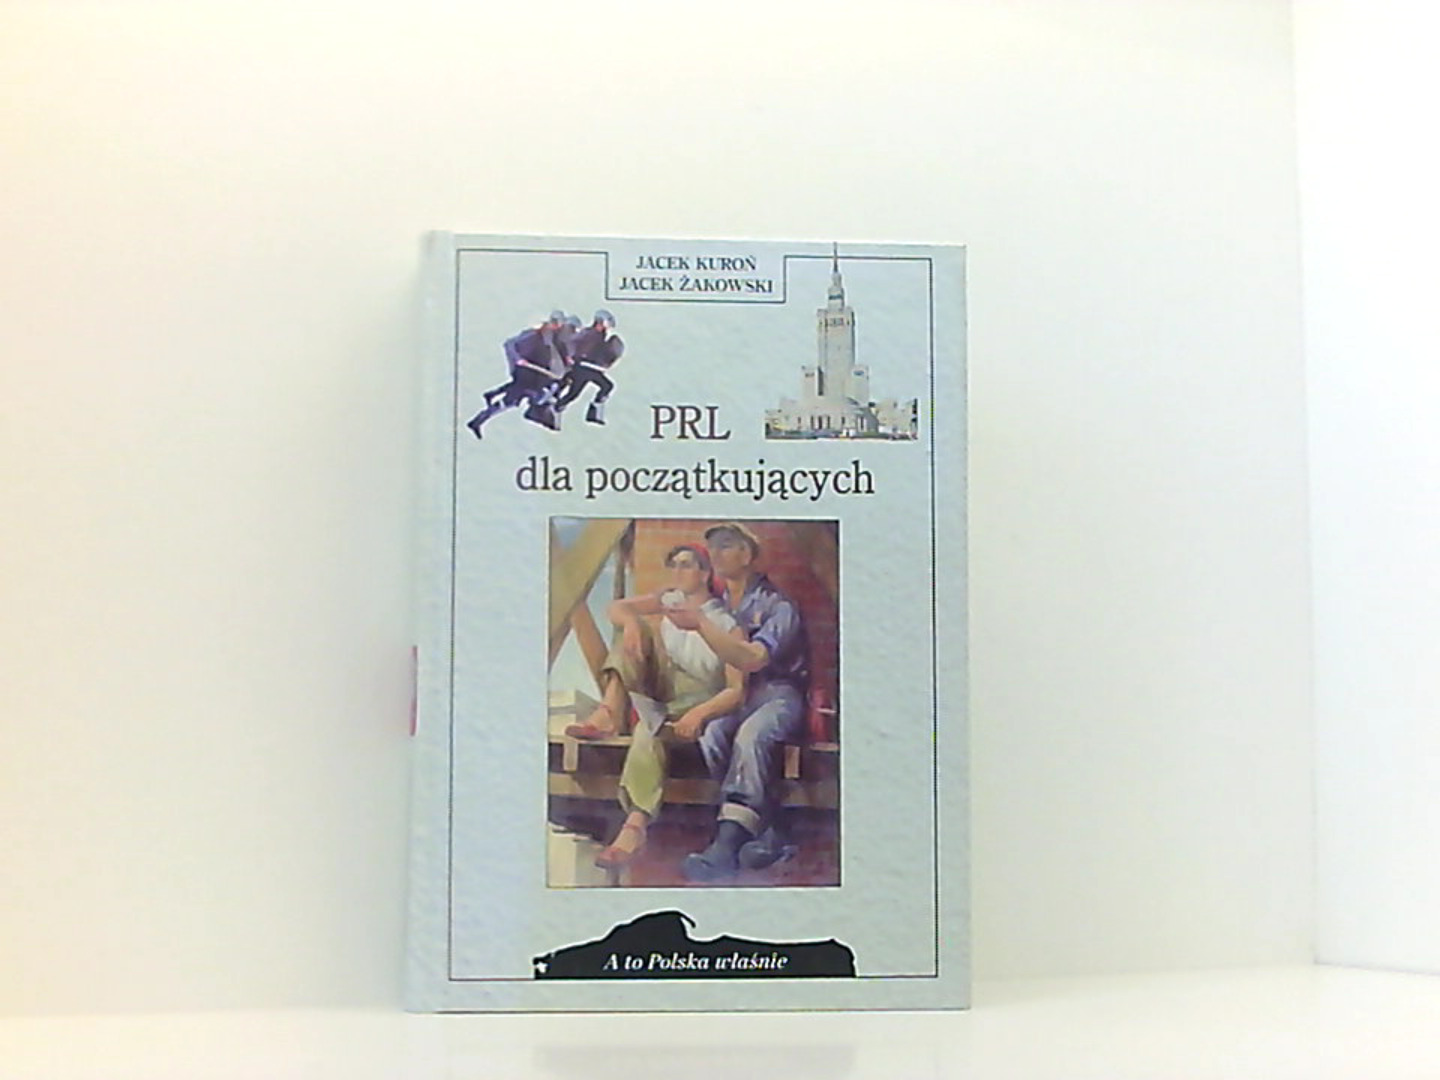 PRL dla poczatkujacych (A to Polska wlasnie) (Polish Edition) - Kuroń, J